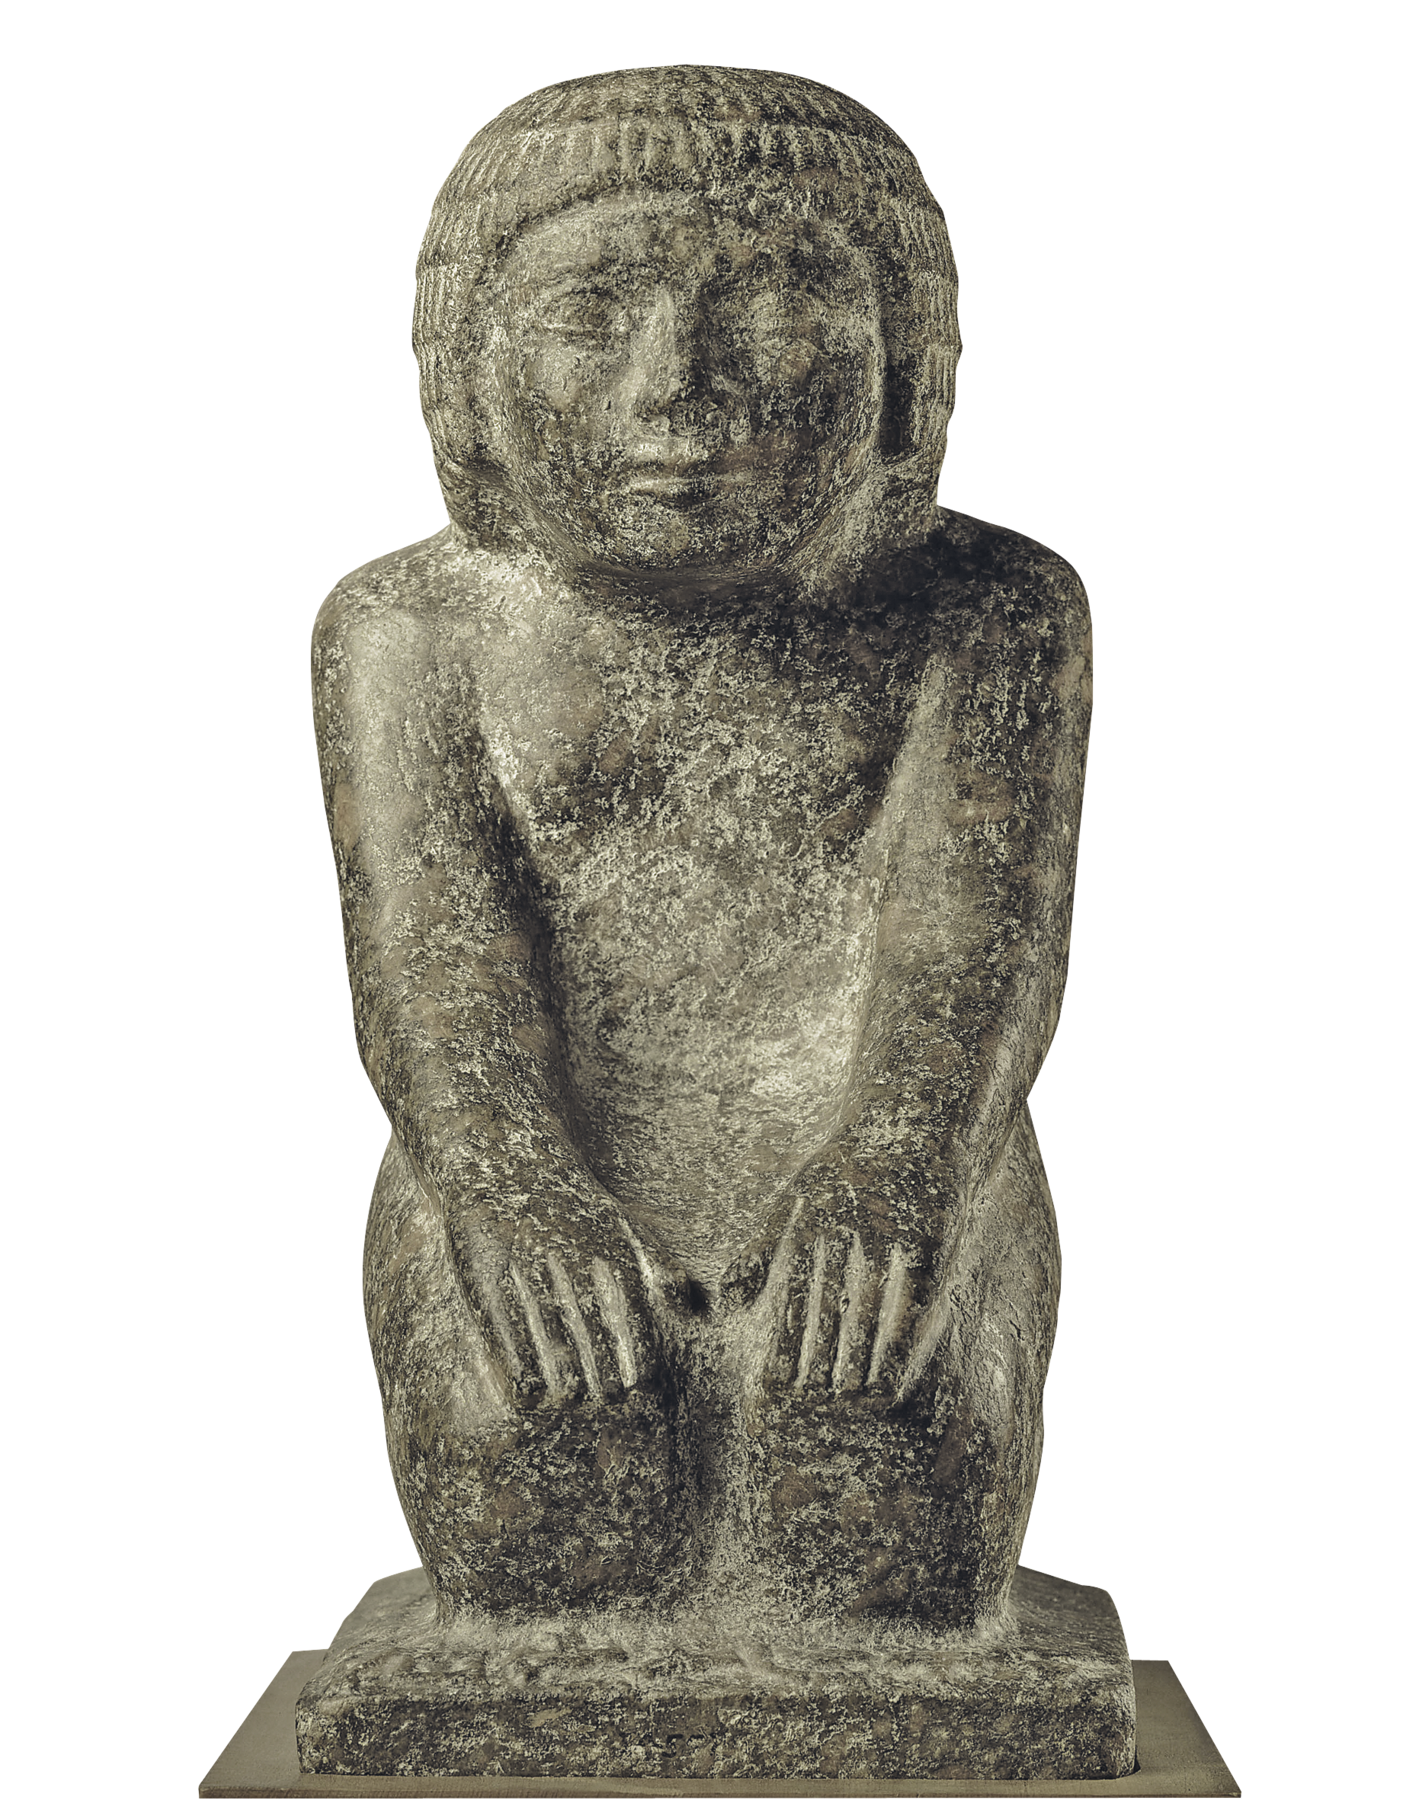 Fotografia. Escultura em pedra de cor cinza, representando uma figura humana sentada sobre os pés e com as duas mãos sobre os joelhos. A figura tem cabelos curtos, com uma franja sobre a testa e está nua, apoiada sobre uma base retangular horizontal.